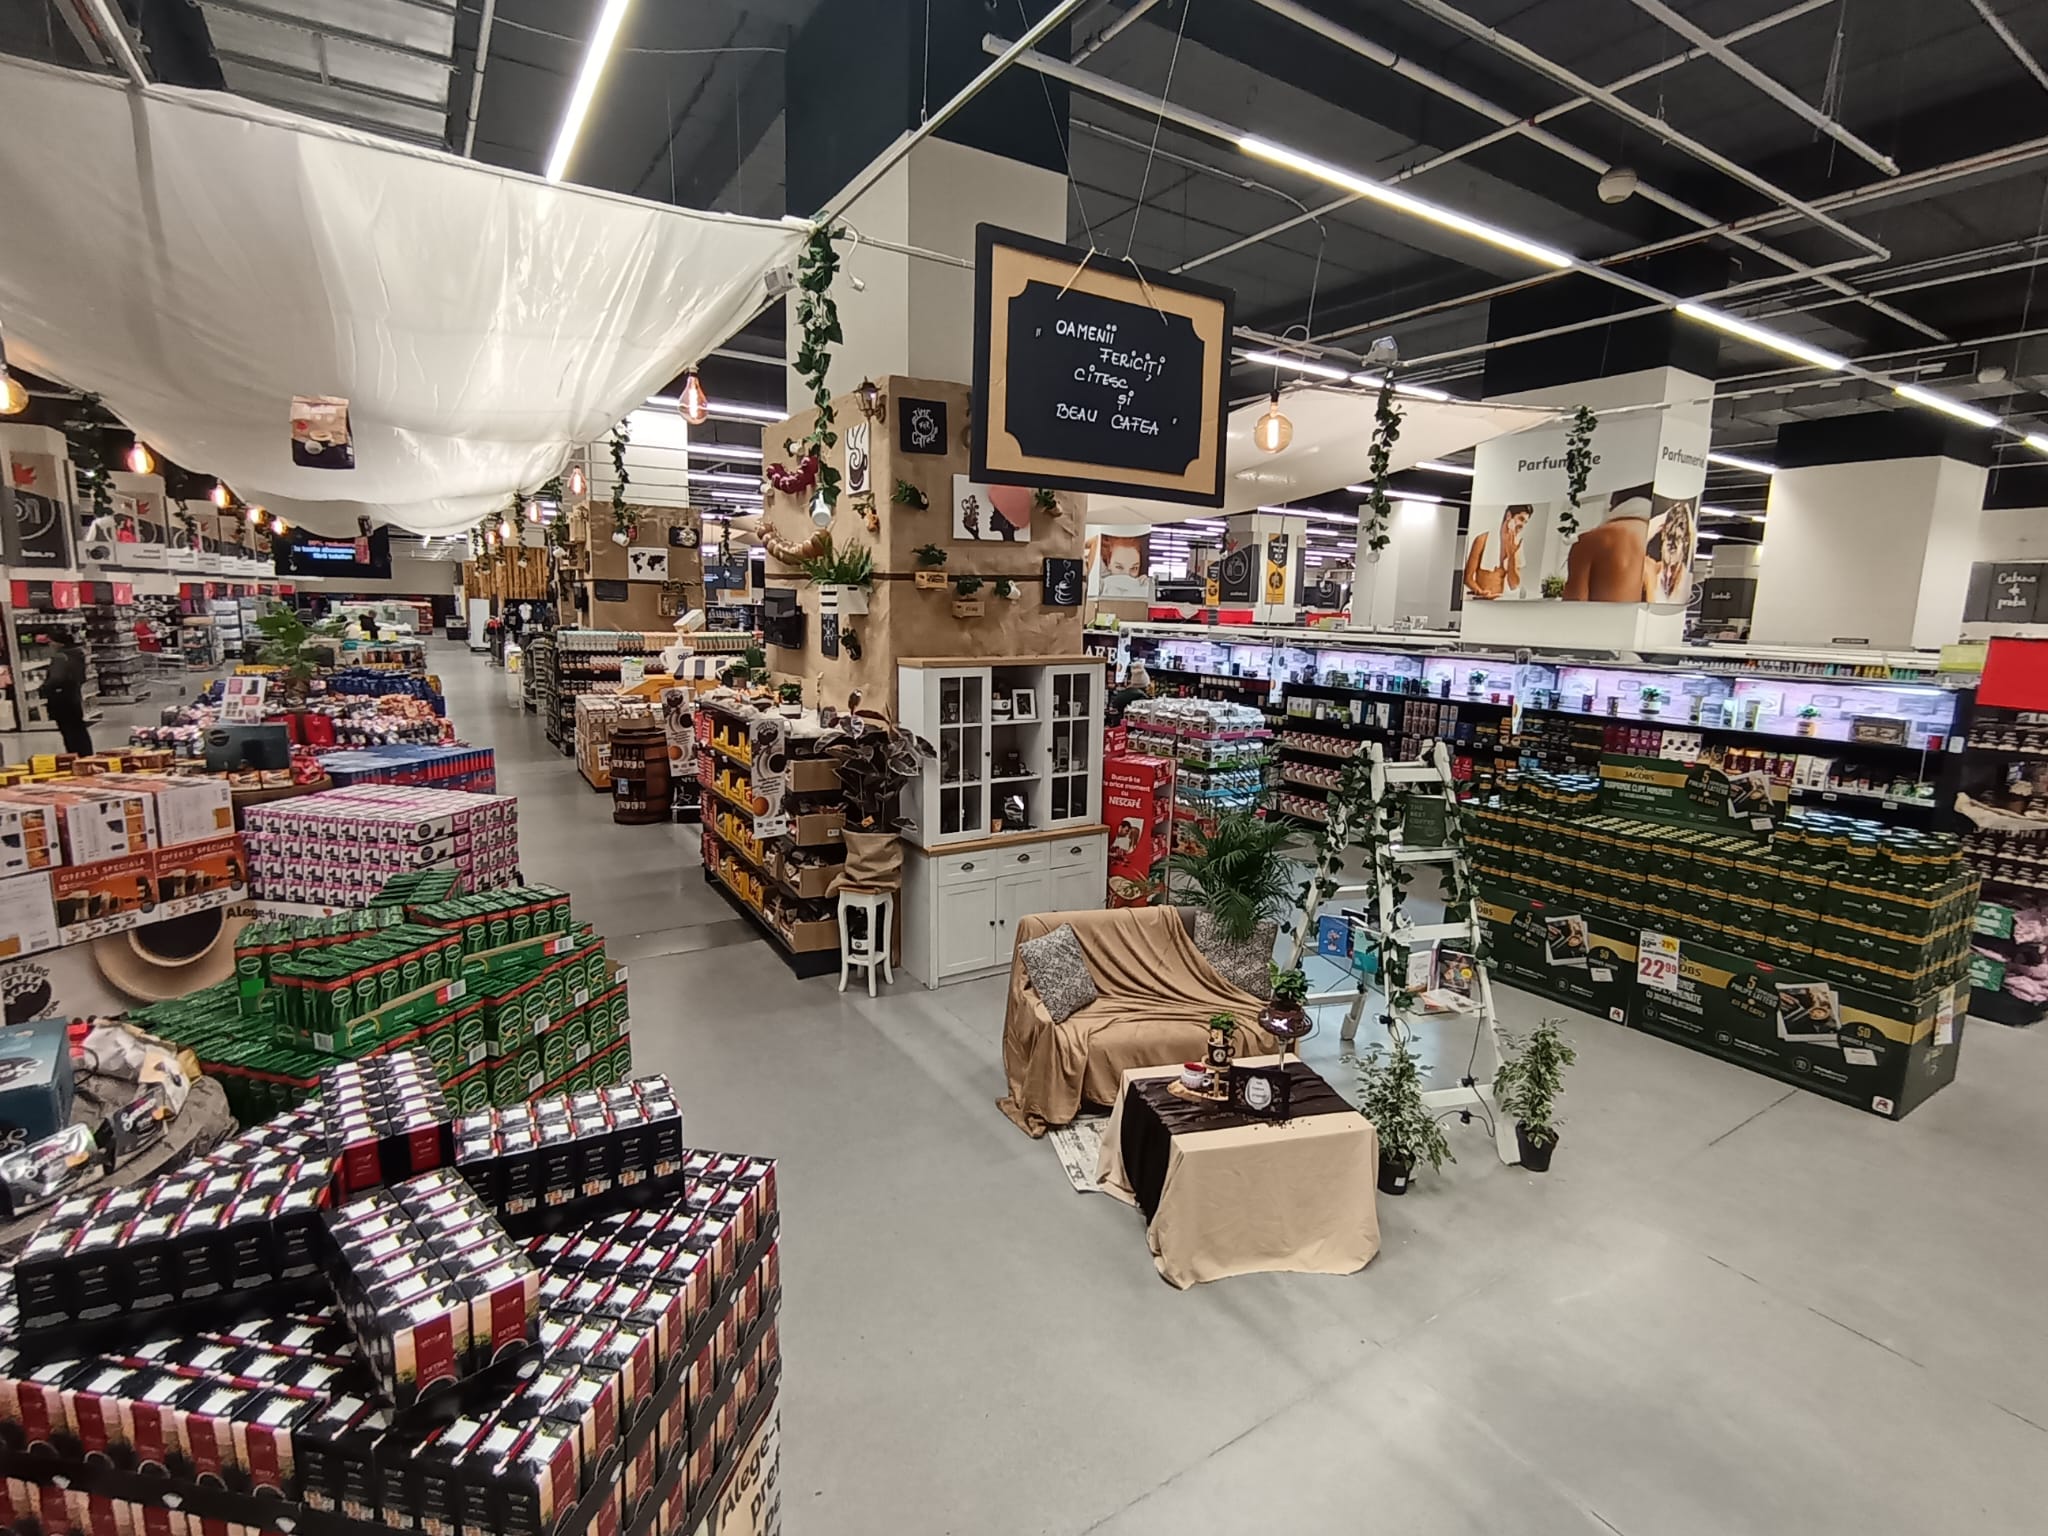 Marele Târg de Cafea și Ceai din magazinele Auchan propune peste 300 de produse și arome